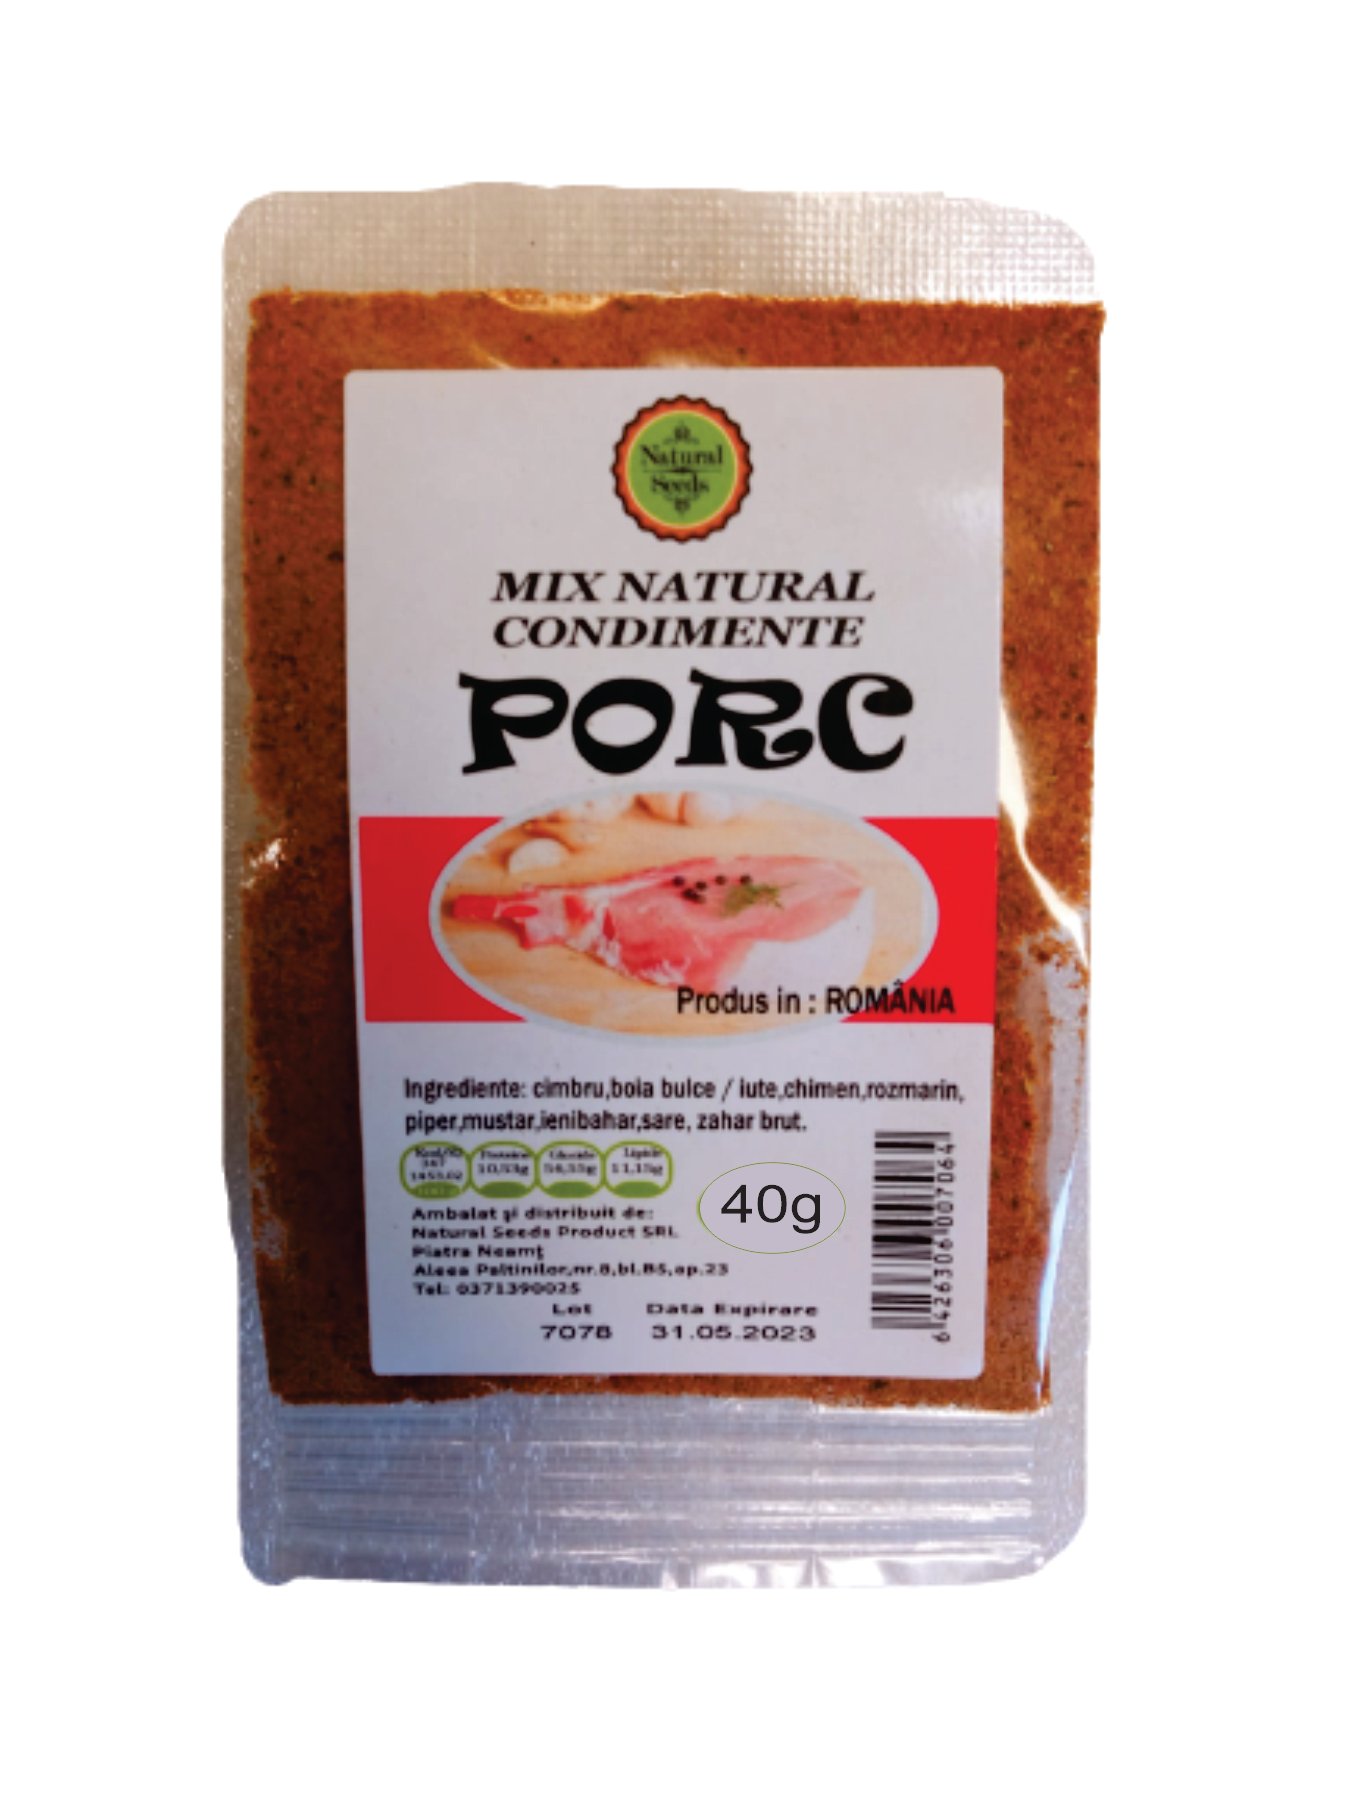 Mix natural condimente carne de porc, Natural Seeds Product